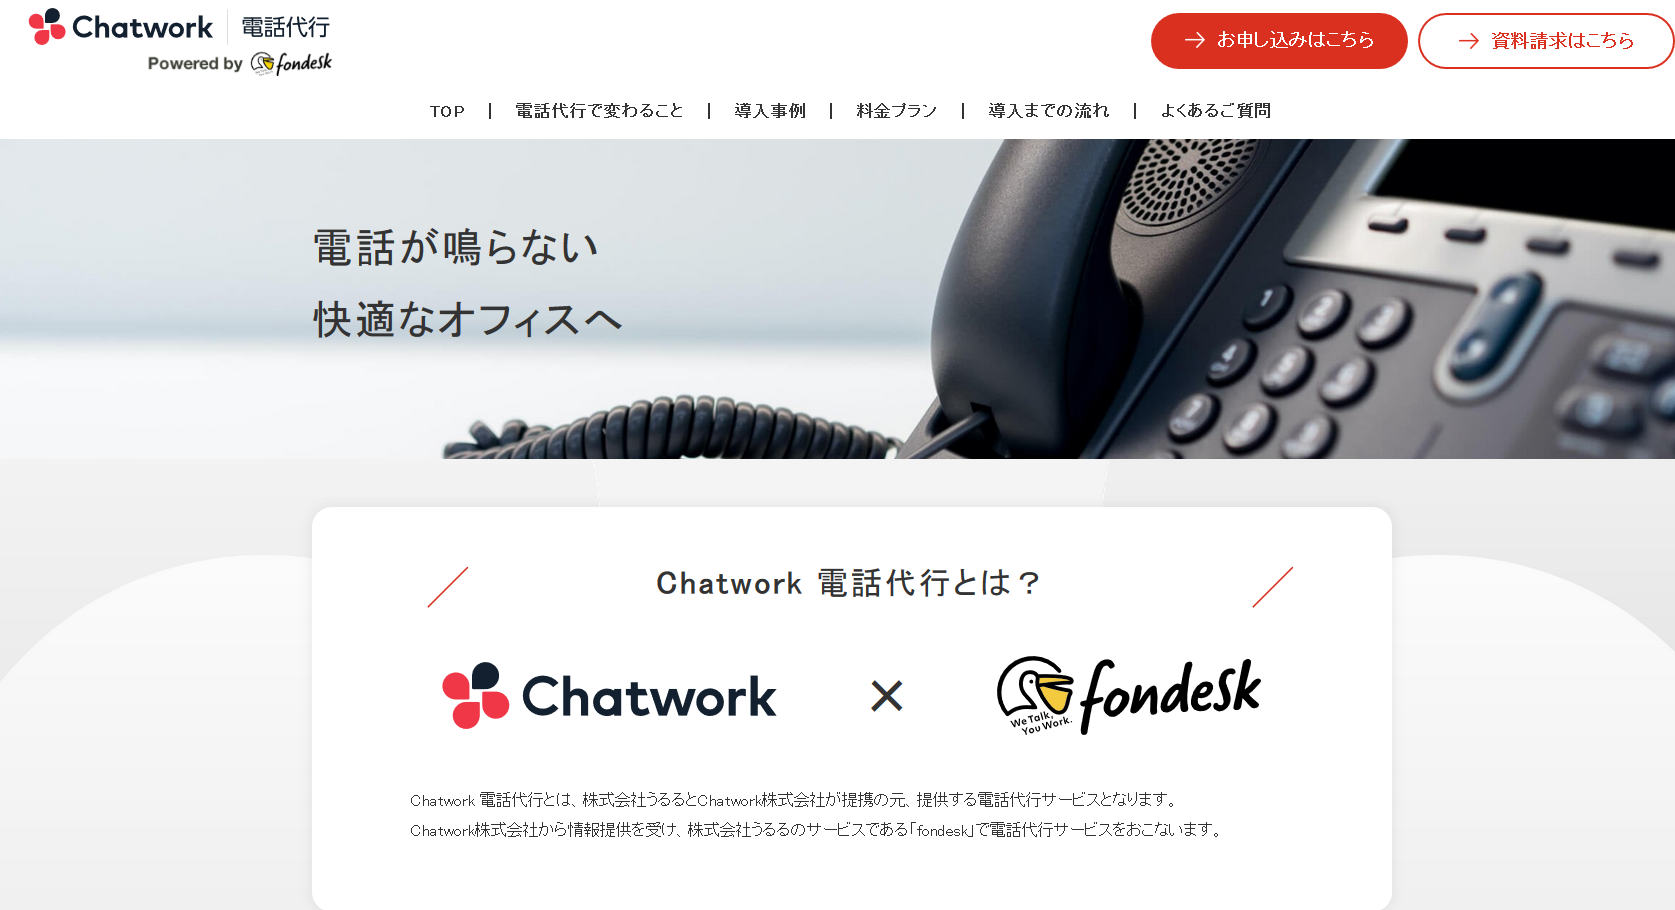 Chatwork株式会社のChatwork株式会社サービス